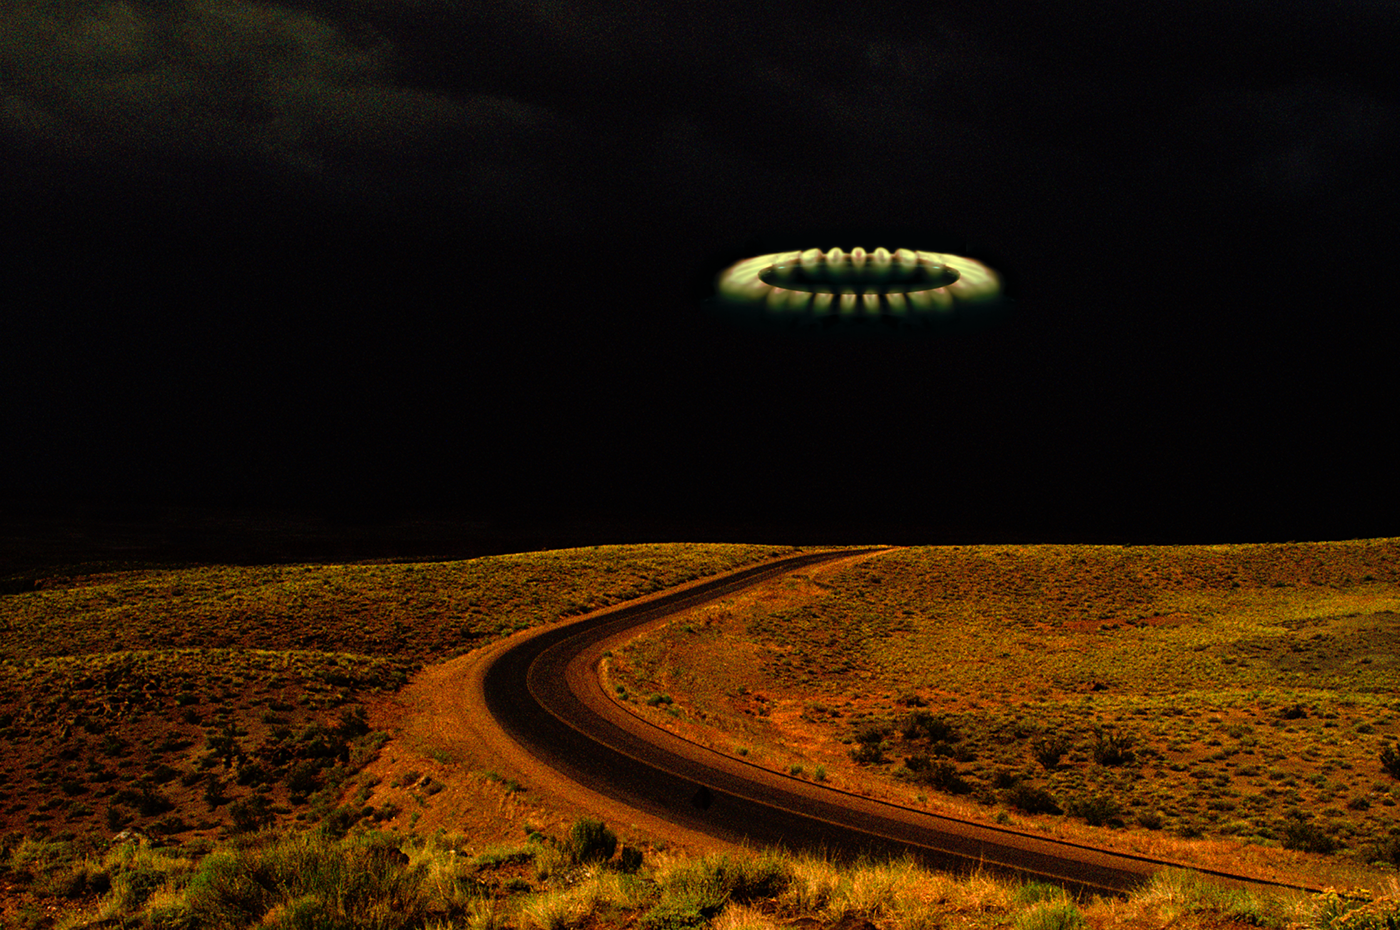 UFO imagination art Retro pop culture series unexplained unexplained phenomena David Jordan Williams Victor Raphael